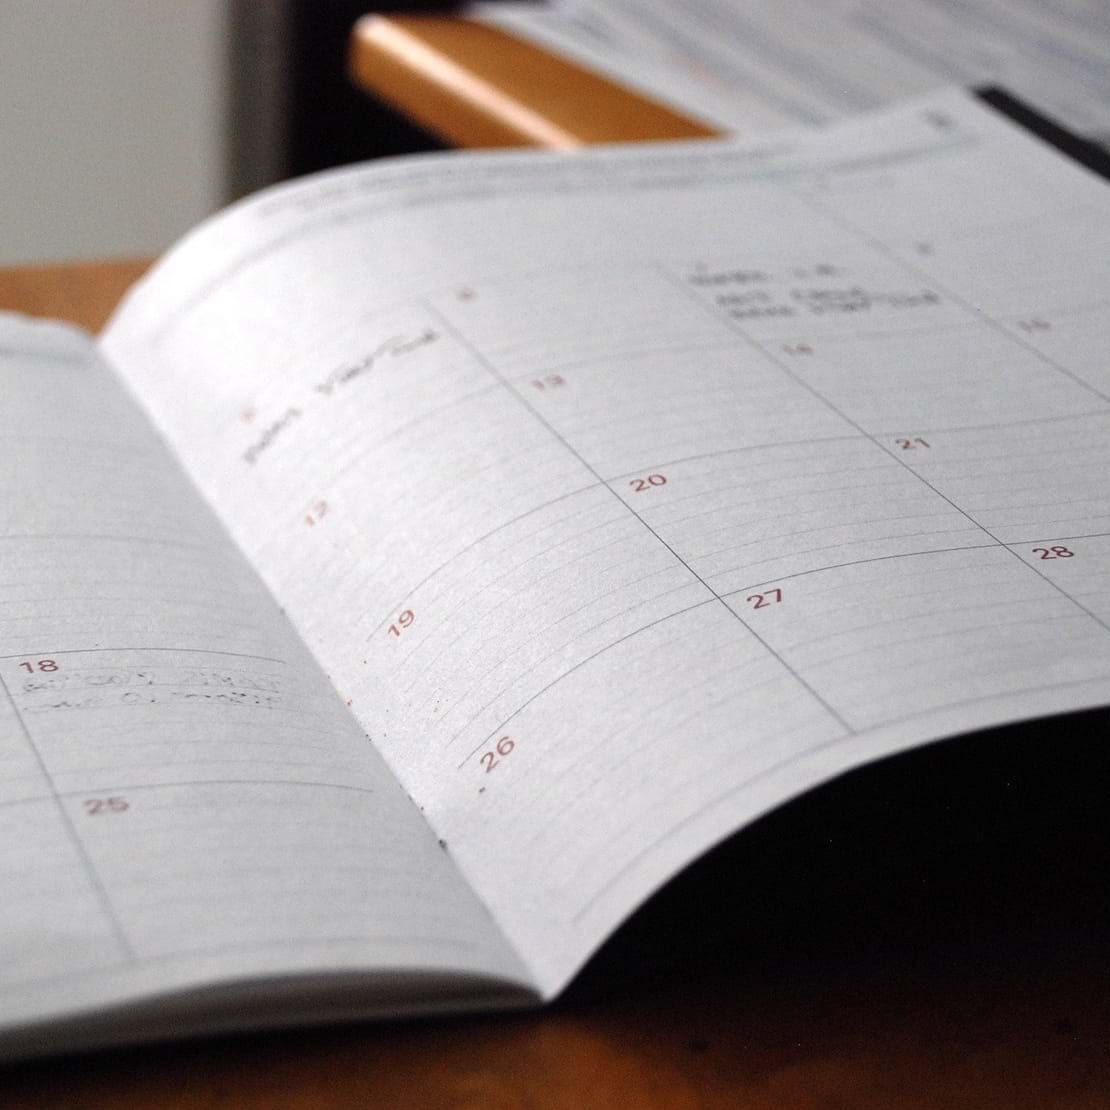 En papirkalender ligger opslået på et bord.